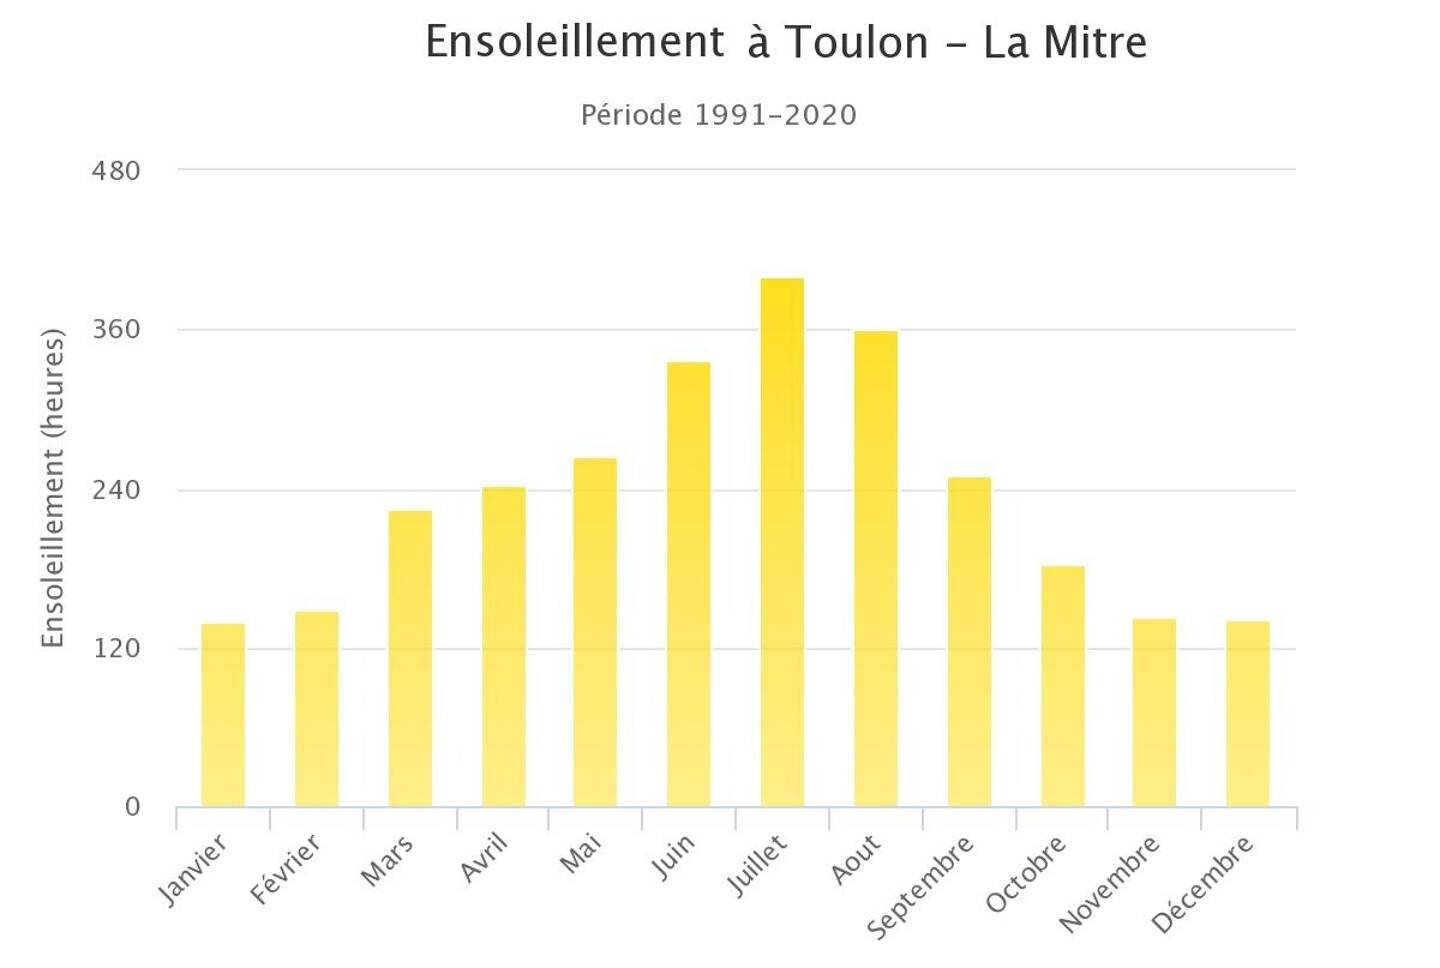 Ensoleillement moyen à Toulon (en heures), de 1991 à 2020.